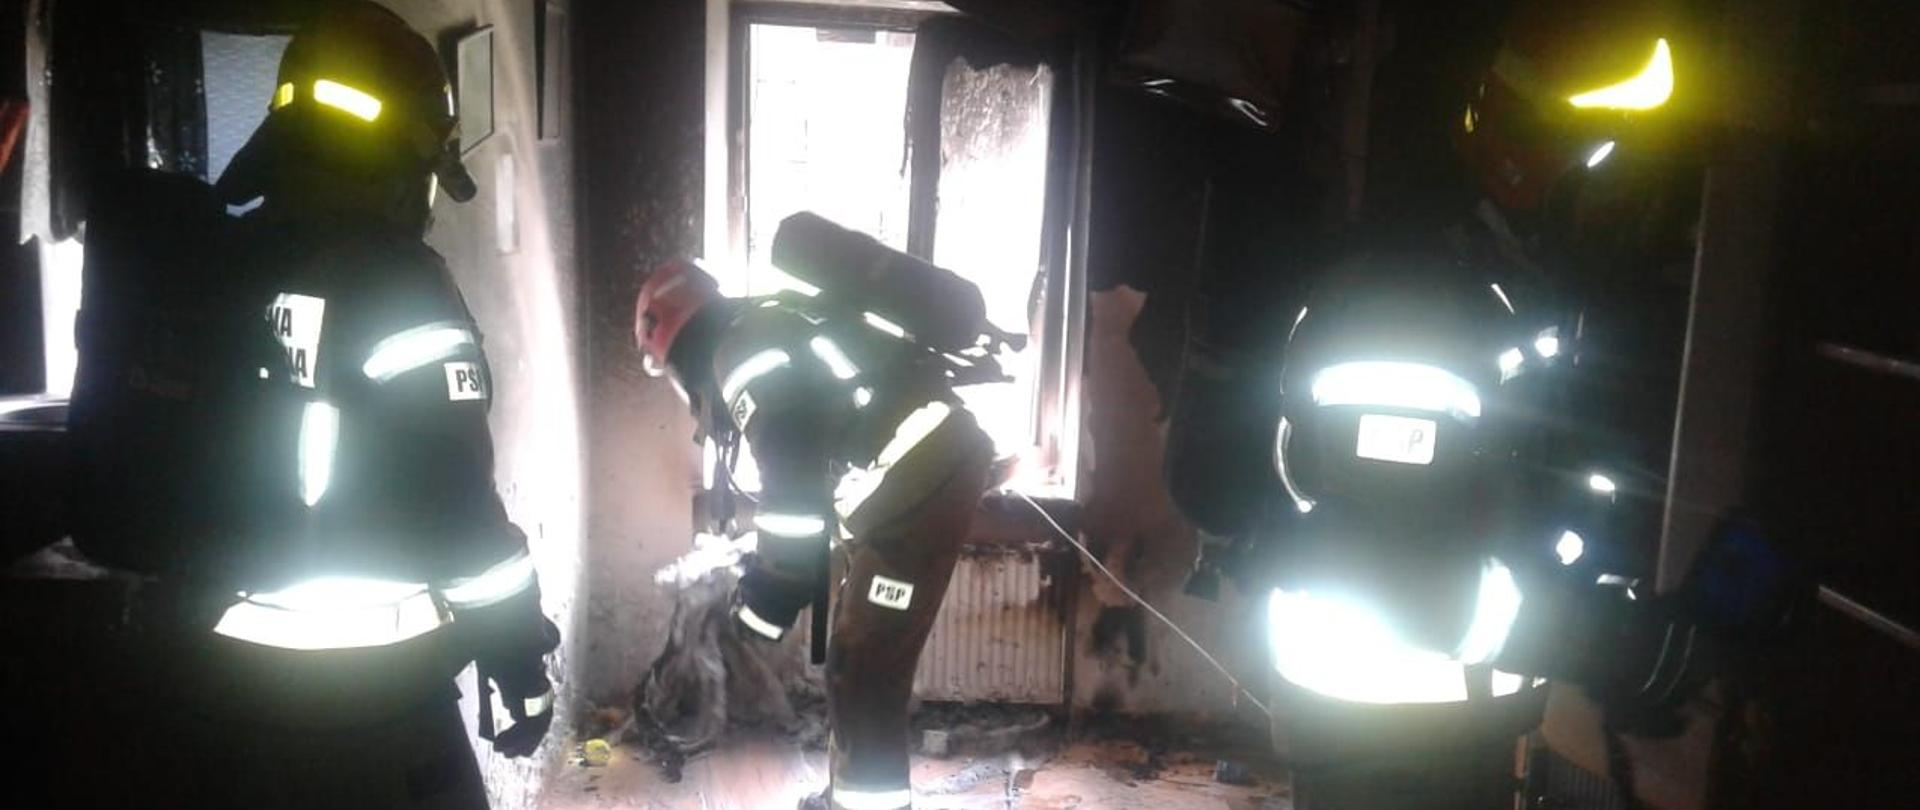 W pomieszczeniu w którym powstał pożar trzech strażaków usuwa spalone elementy wyposażenia na zewnątrz przez okno.